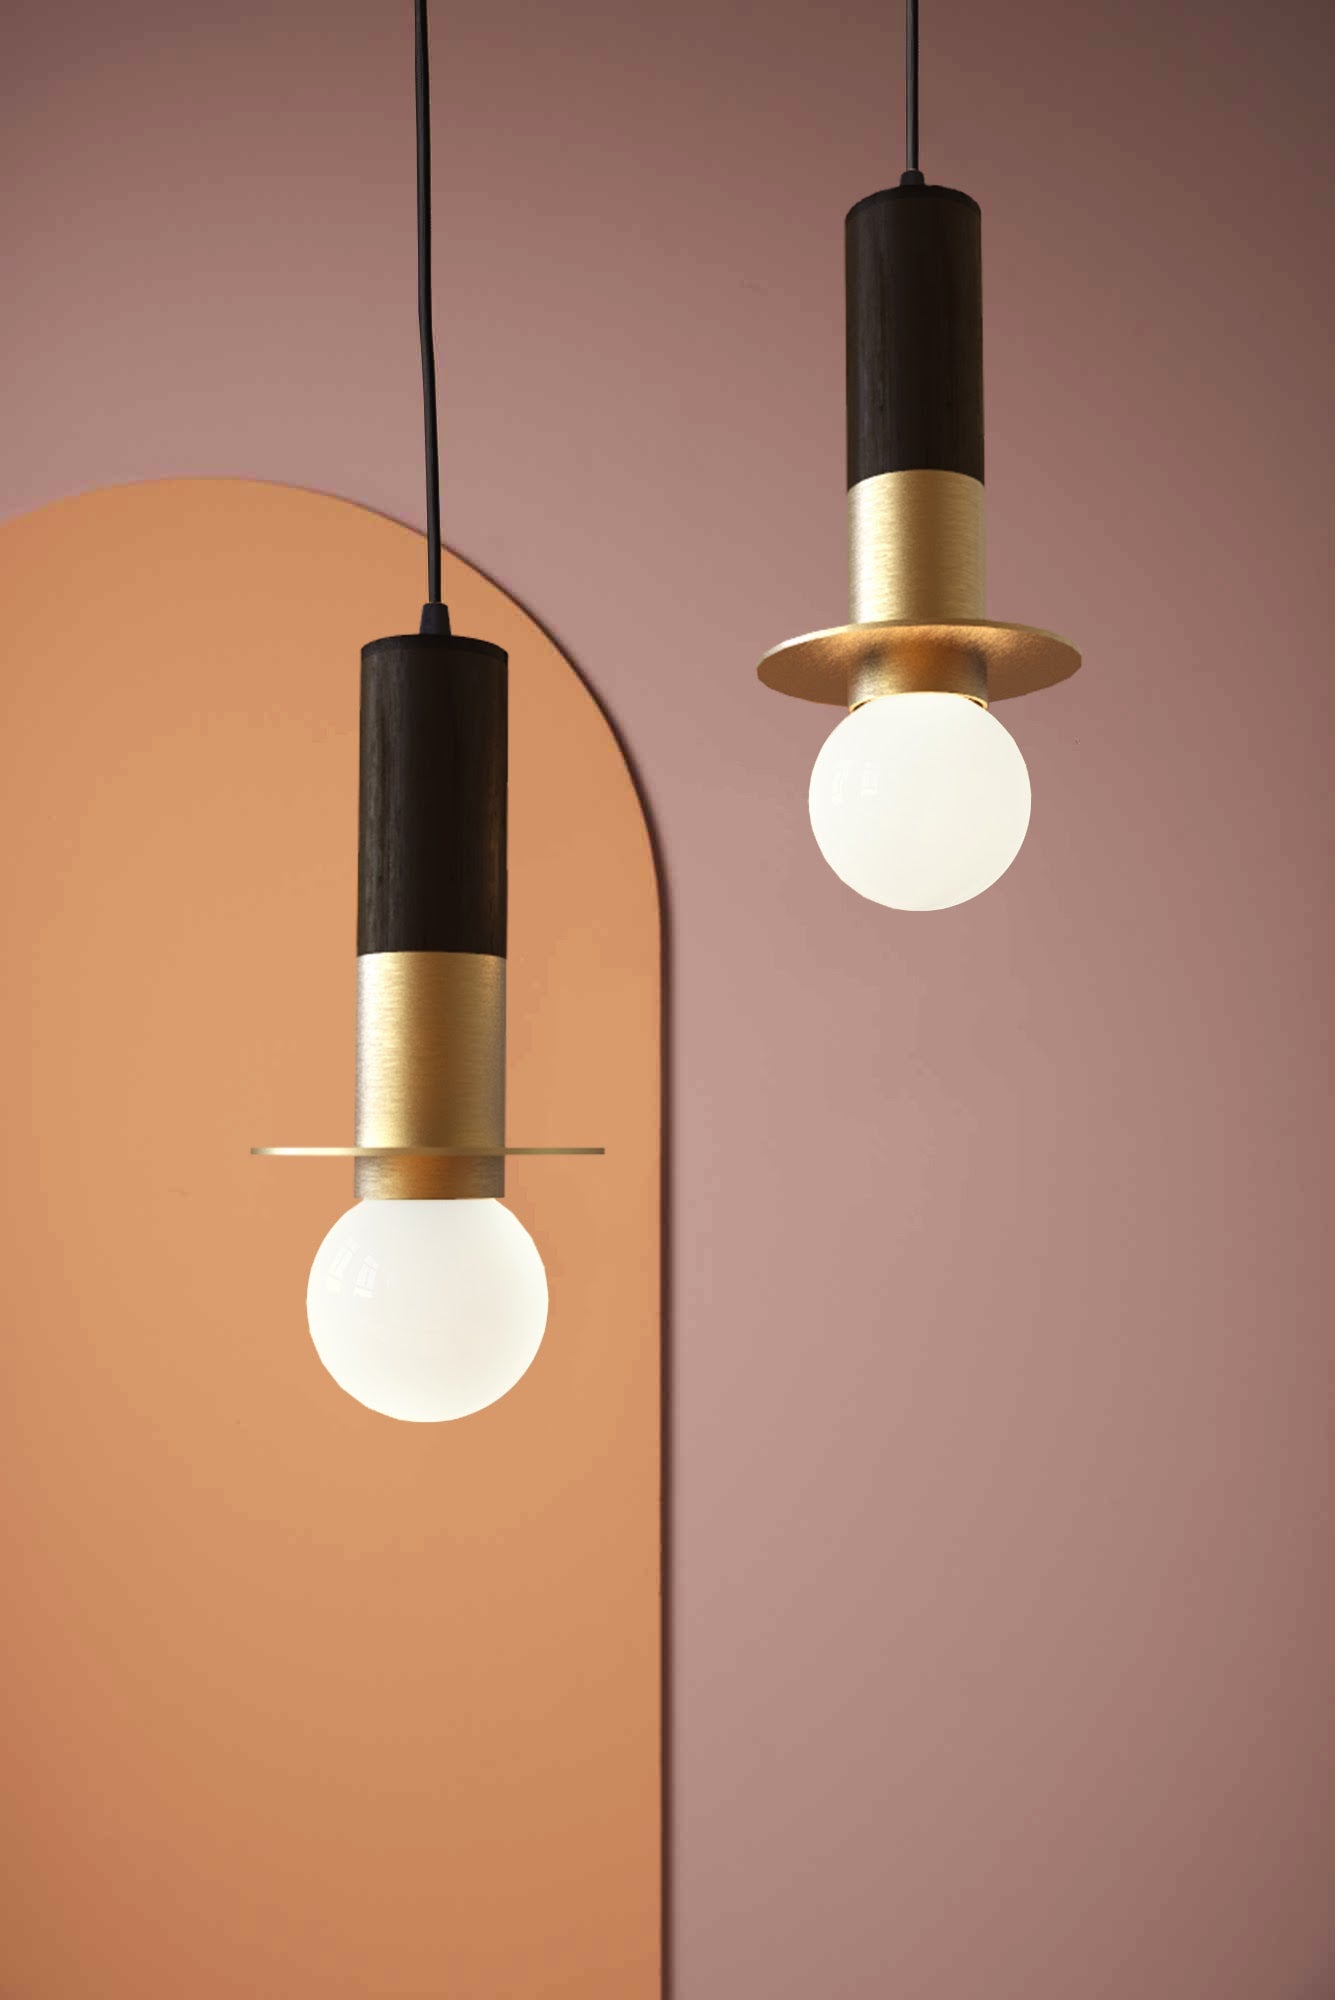 Firefly Pendant Lamp: Designer Bamboo Pendant Lamp Japandi Handmade Bar Lighting Restaurants Decor Home Bar